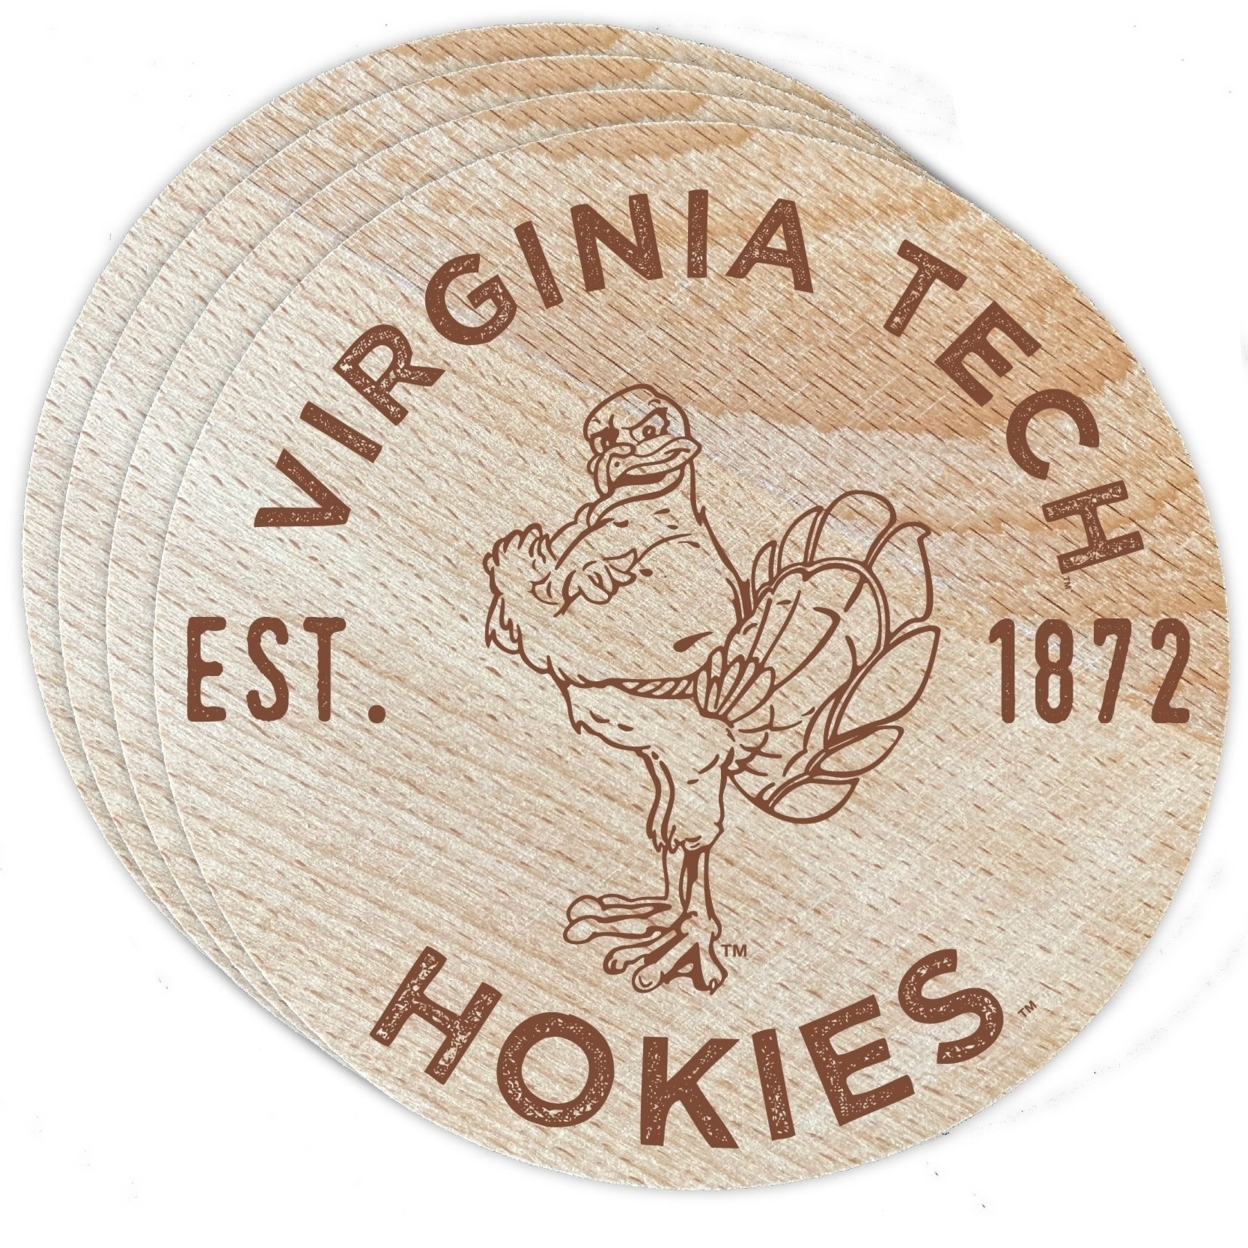 Virginia Tech Hokies Wood Coaster Engraved 4 Pack